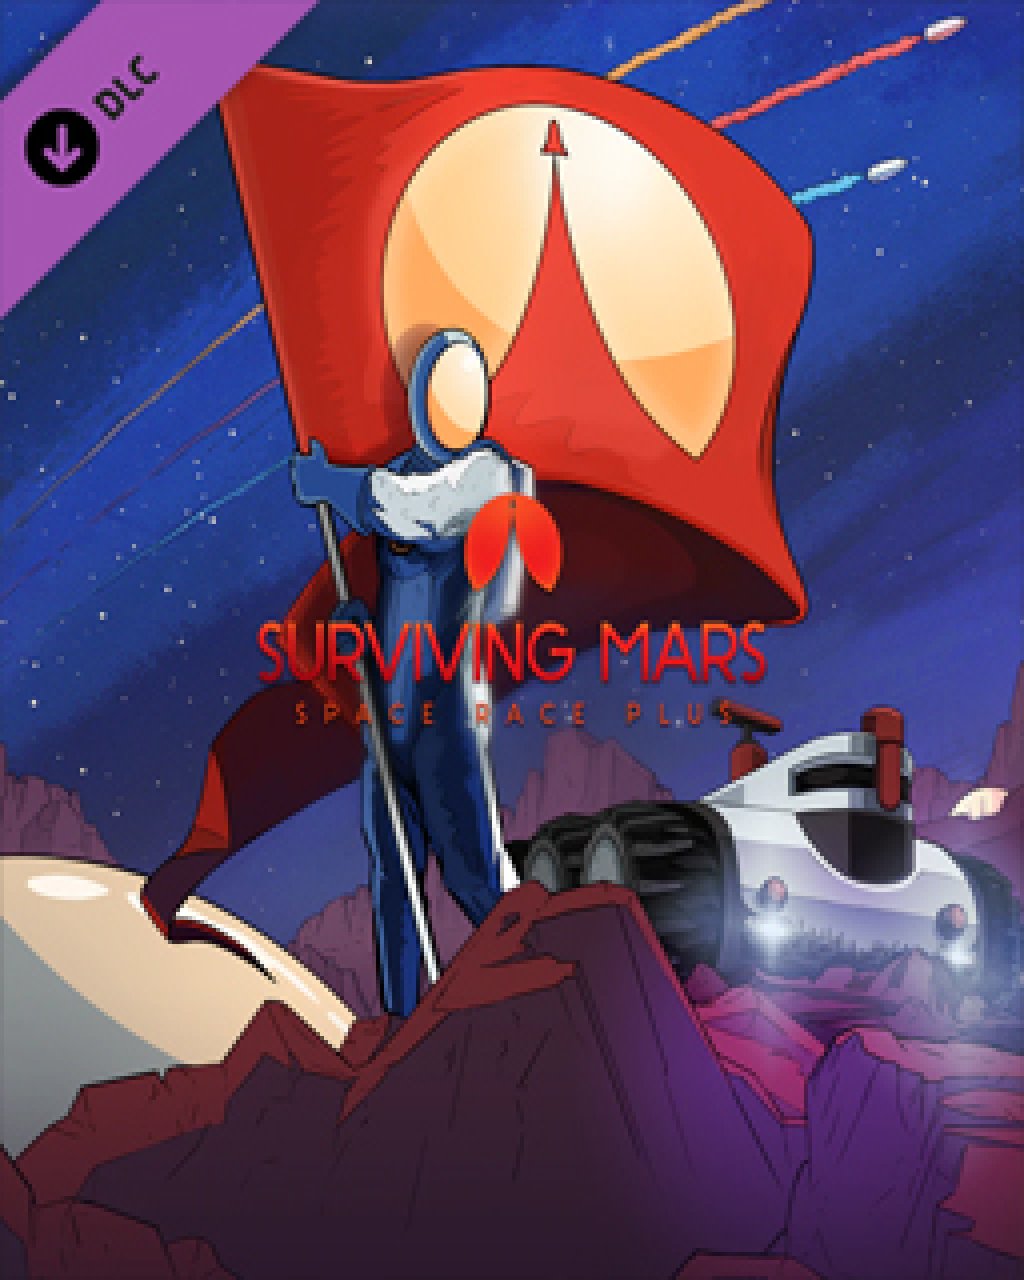 ESD Surviving Mars Space Race Plus